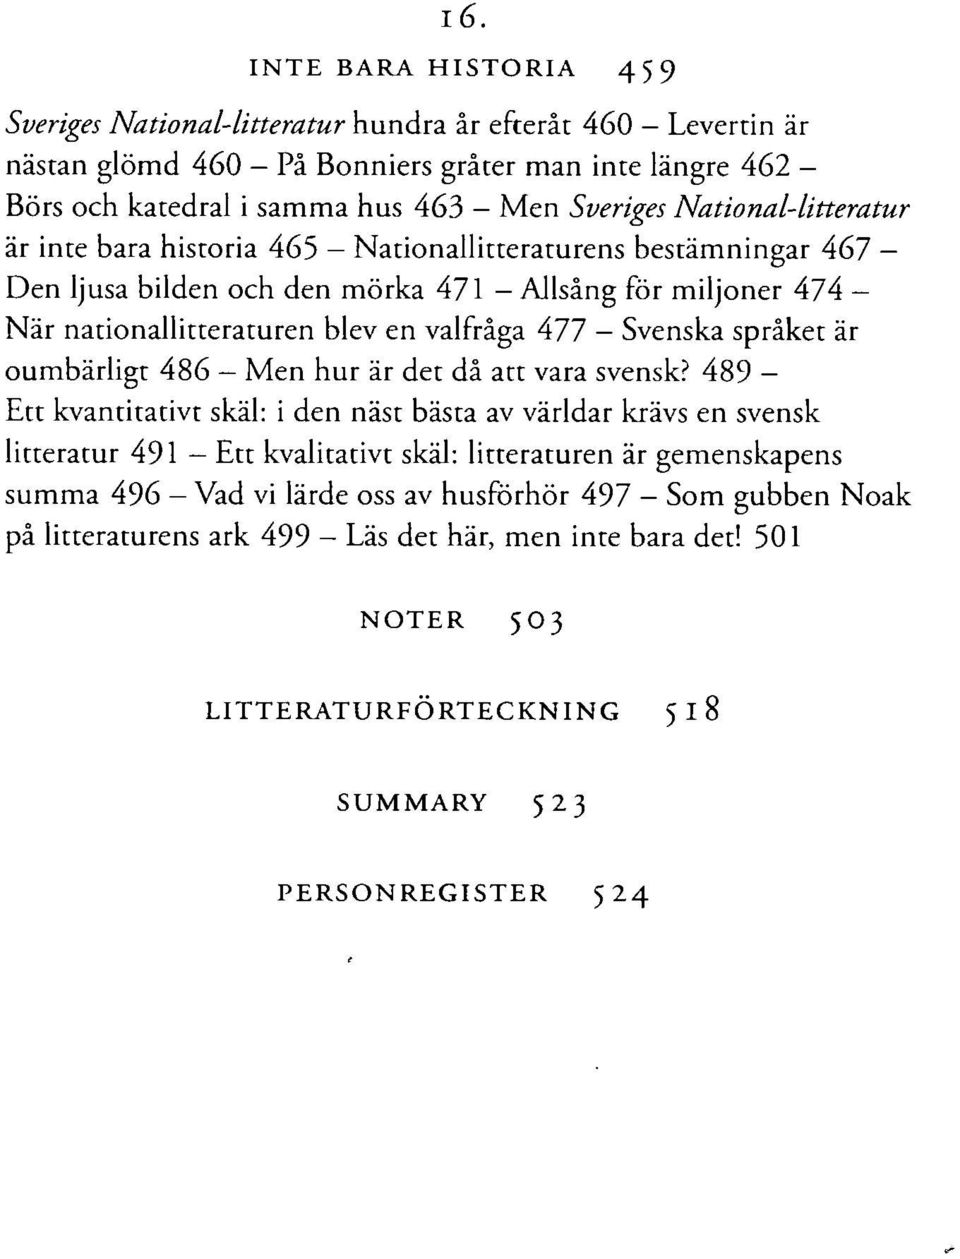 Svenska språket är oumbärligt 486 Men hur är det då att vara svensk?